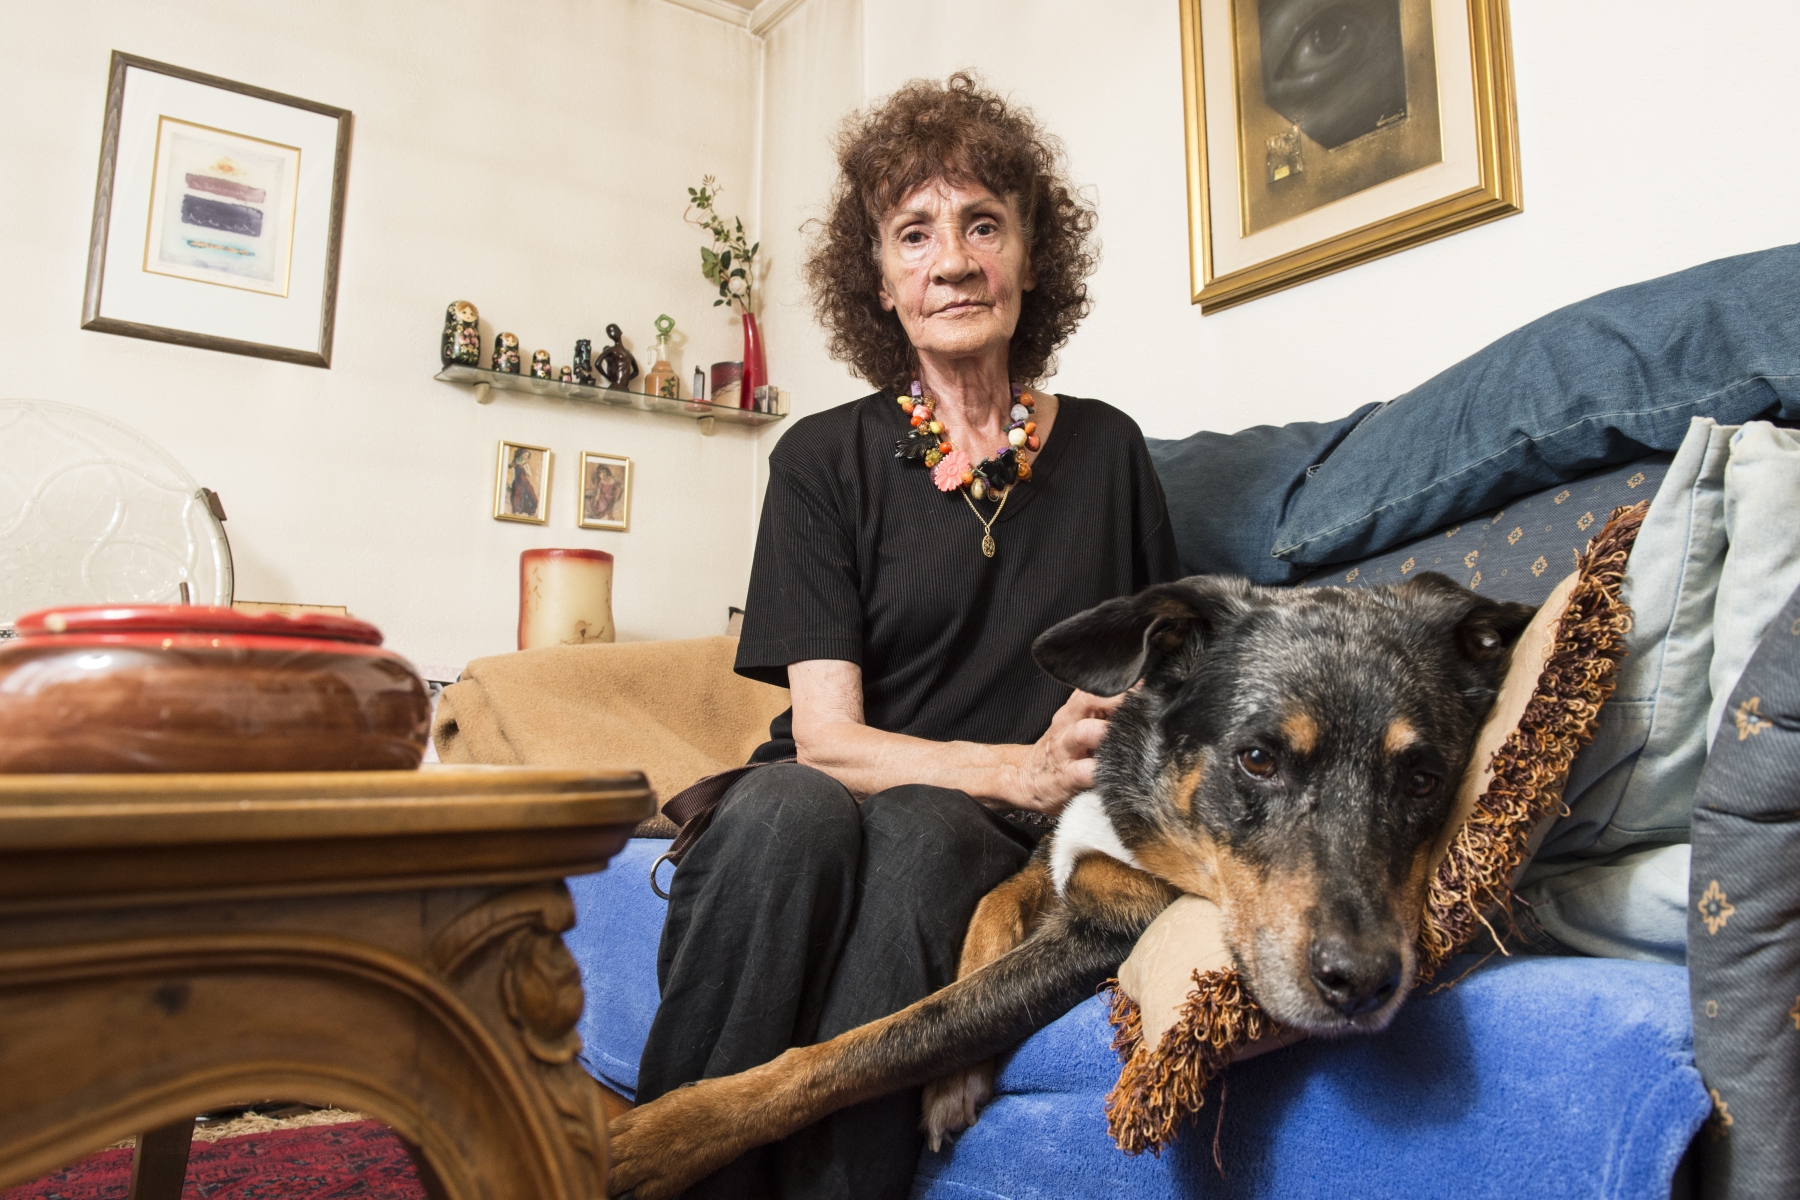 Josette Sandell Udry et son chien Cristo. "Grâce à lui, je ne reste pas cloîtrée chez moi", souligne-t-elle.